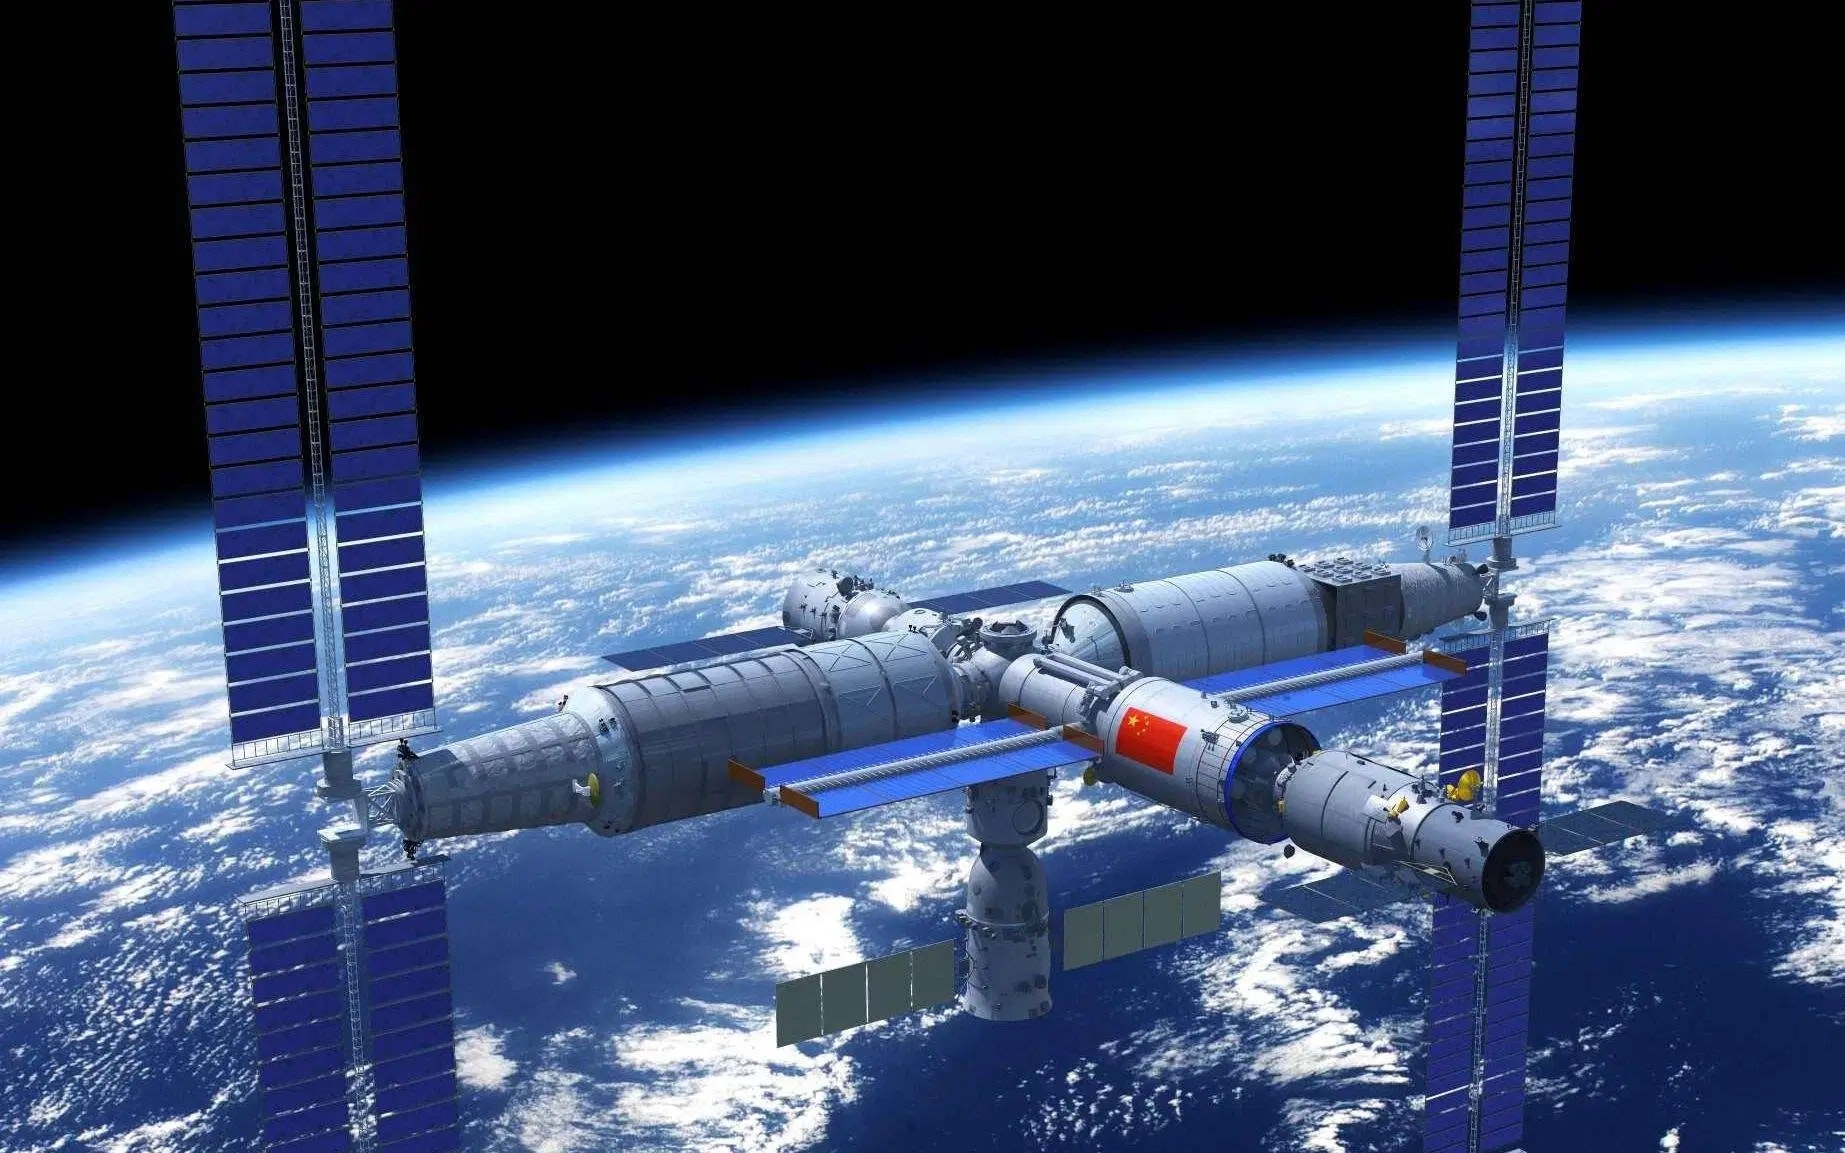 Η Κίνα αναβαθμίζει το διαστημικό της σταθμό σε διεθνή προσκαλώντας αστροναύτες από άλλες χώρες